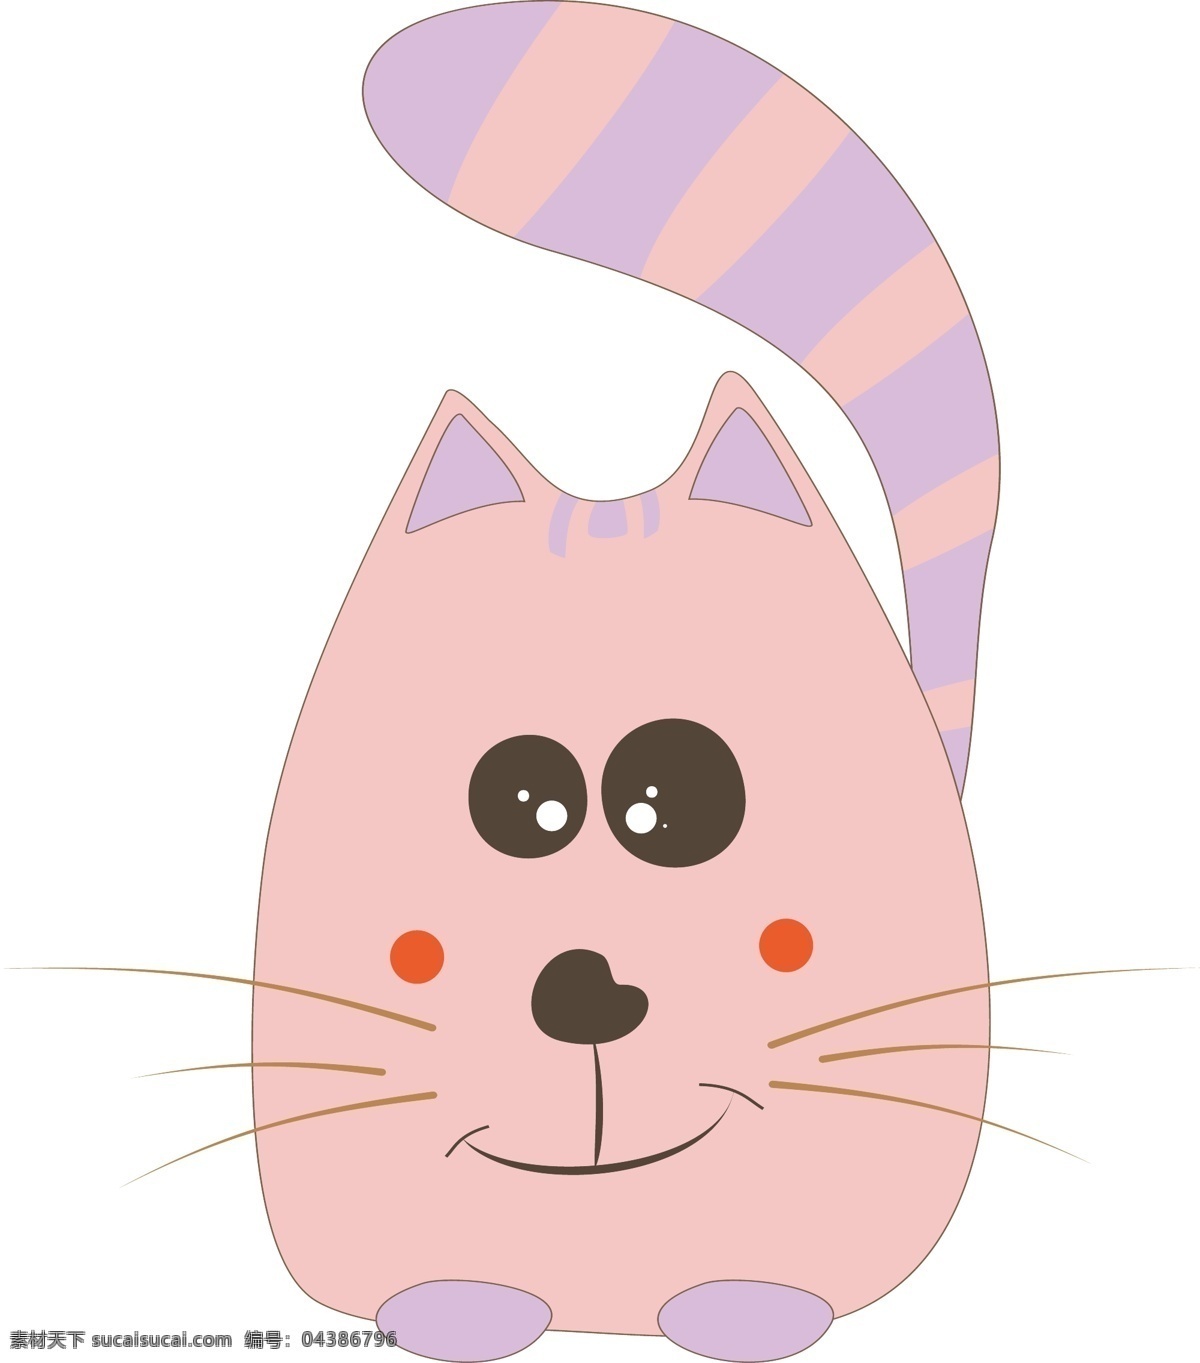 胖胖 粉色 猫咪 可爱 手绘 卡通 免 抠 胖胖的 免抠 方便快捷 插画动漫 萌萌的 闪闪 发光 眼神